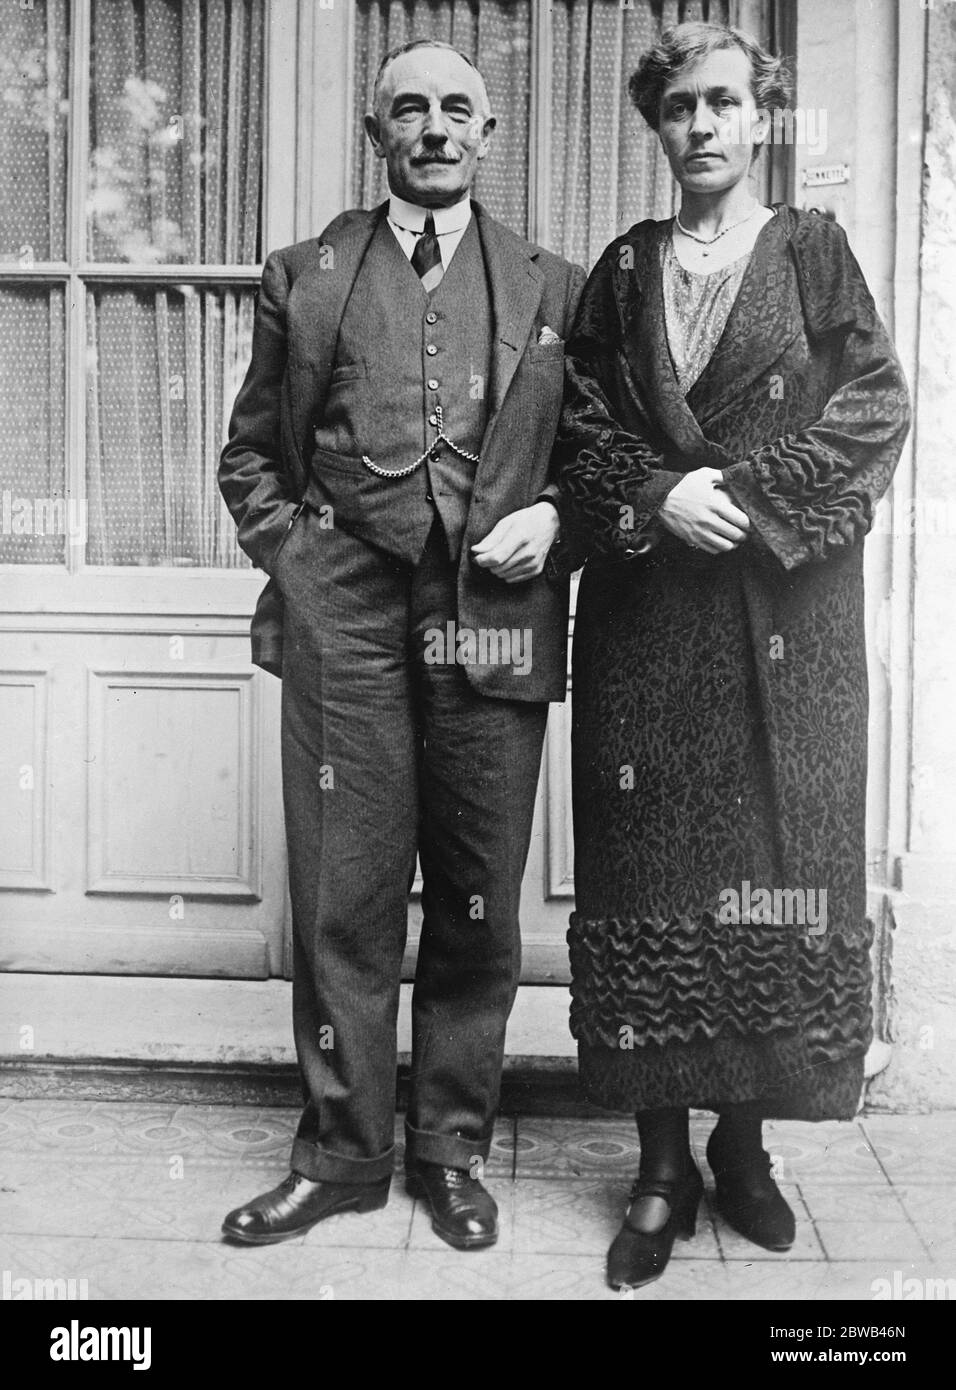 Sir Kynaston Studd et son fiancé Sir Kynaston Studd le célèbre cricketer , avec la princesse Alexandra Lieven , fille du prince Paul de Russie , Maître tardif des cérémonies de la cour russe . Ils doivent être mariés à l'ambassade britannique Churcg à Paris le 16 juin 1924 Banque D'Images